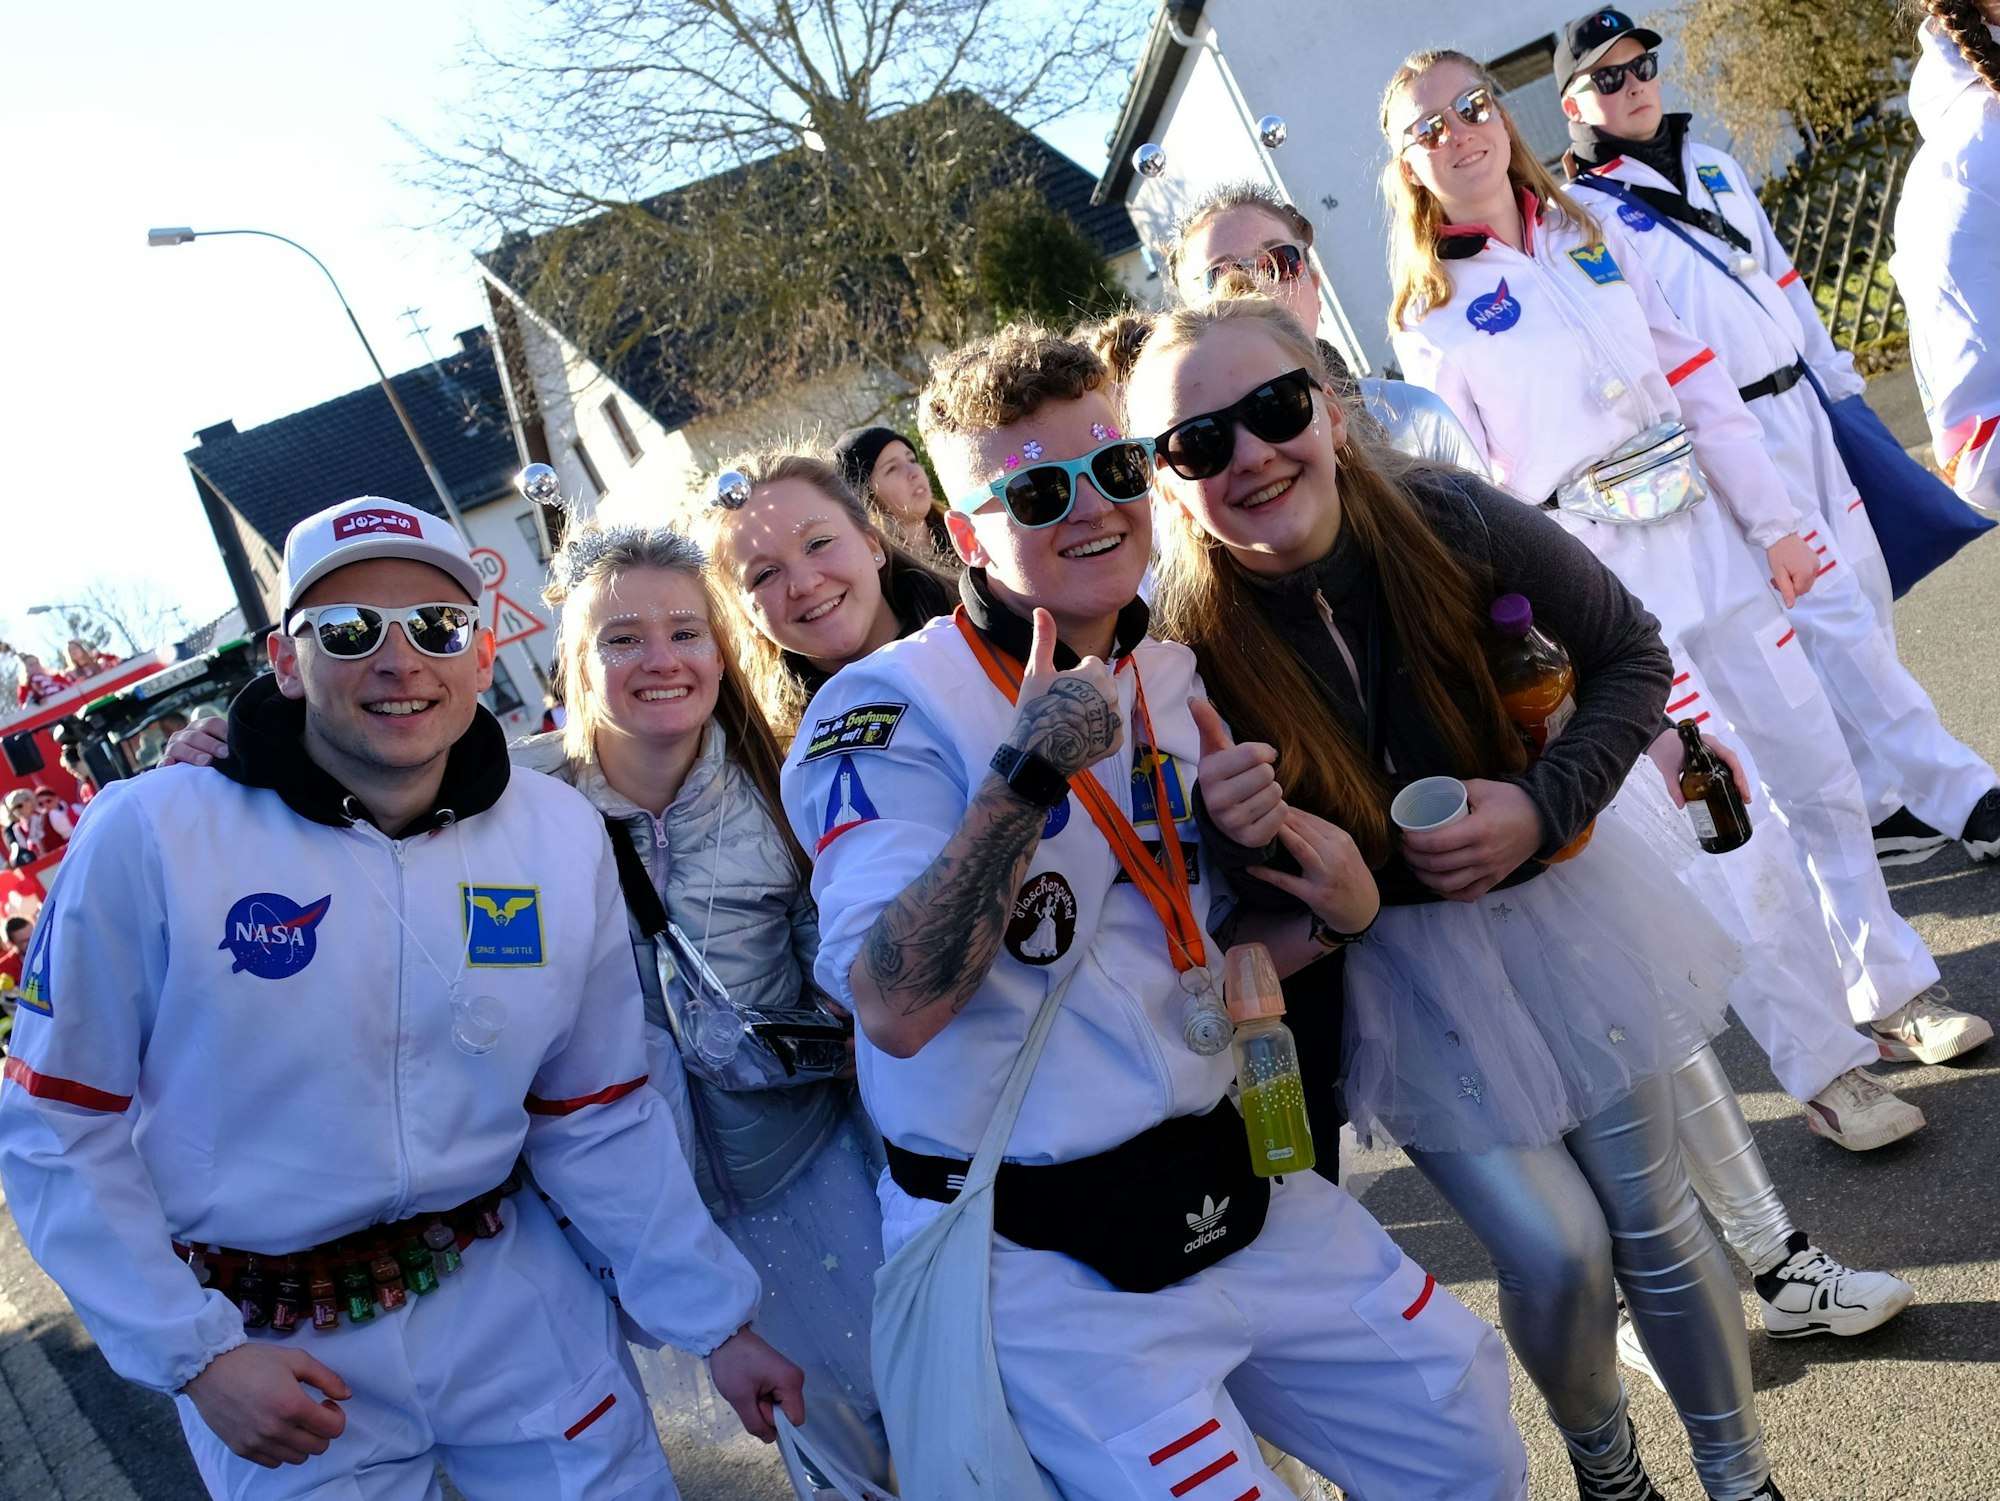 Zu den Sternen: Die Astronauten vom Sistiger Jugendclub beteiligten sich auch wieder beim Rosenmontagszug.